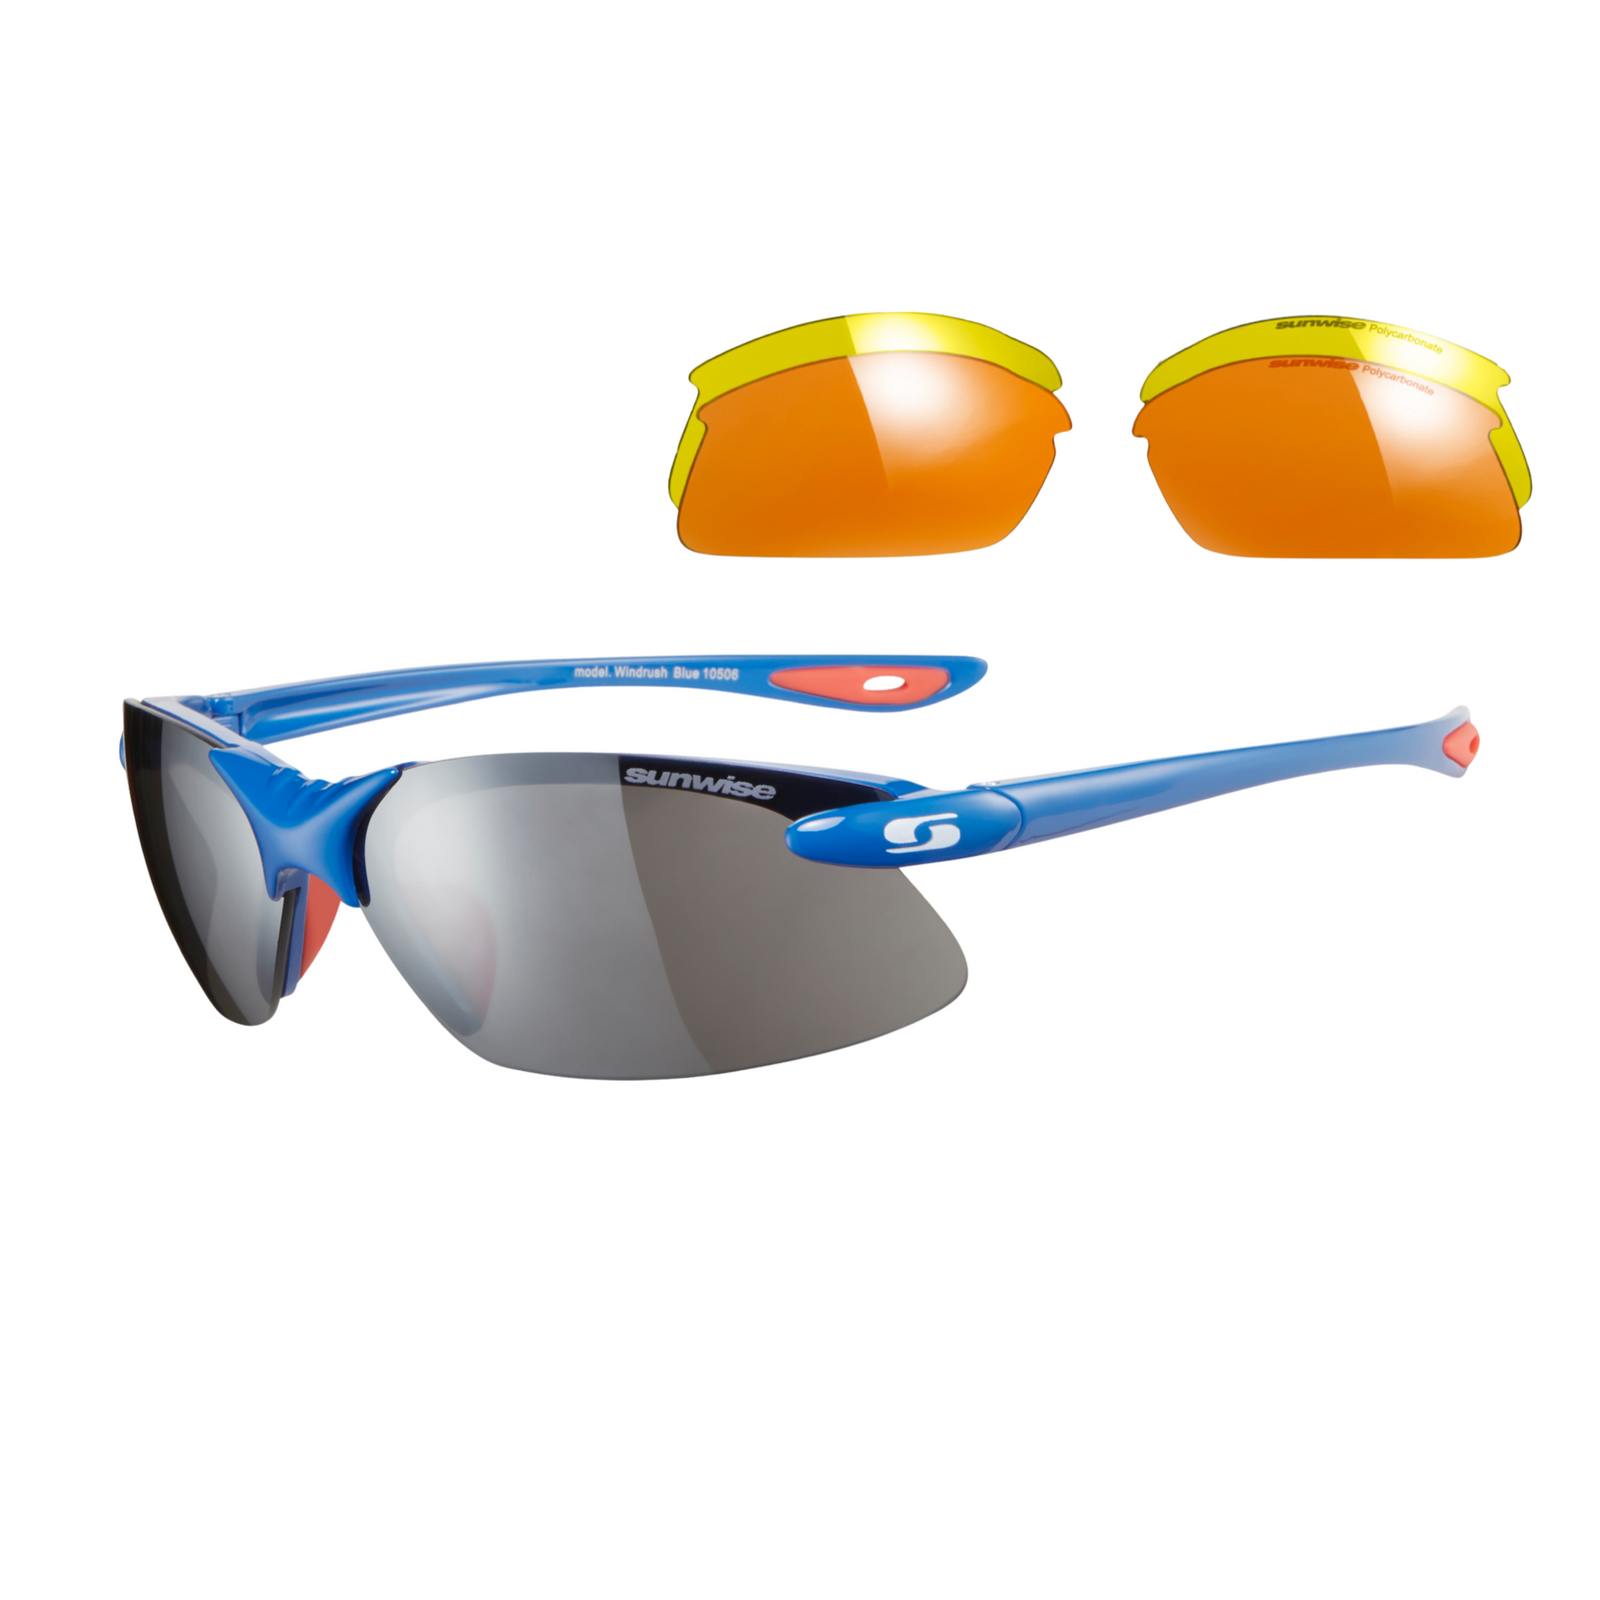 Gafas de sol deportivas Windrush con lentes intercambiables - 6 colores